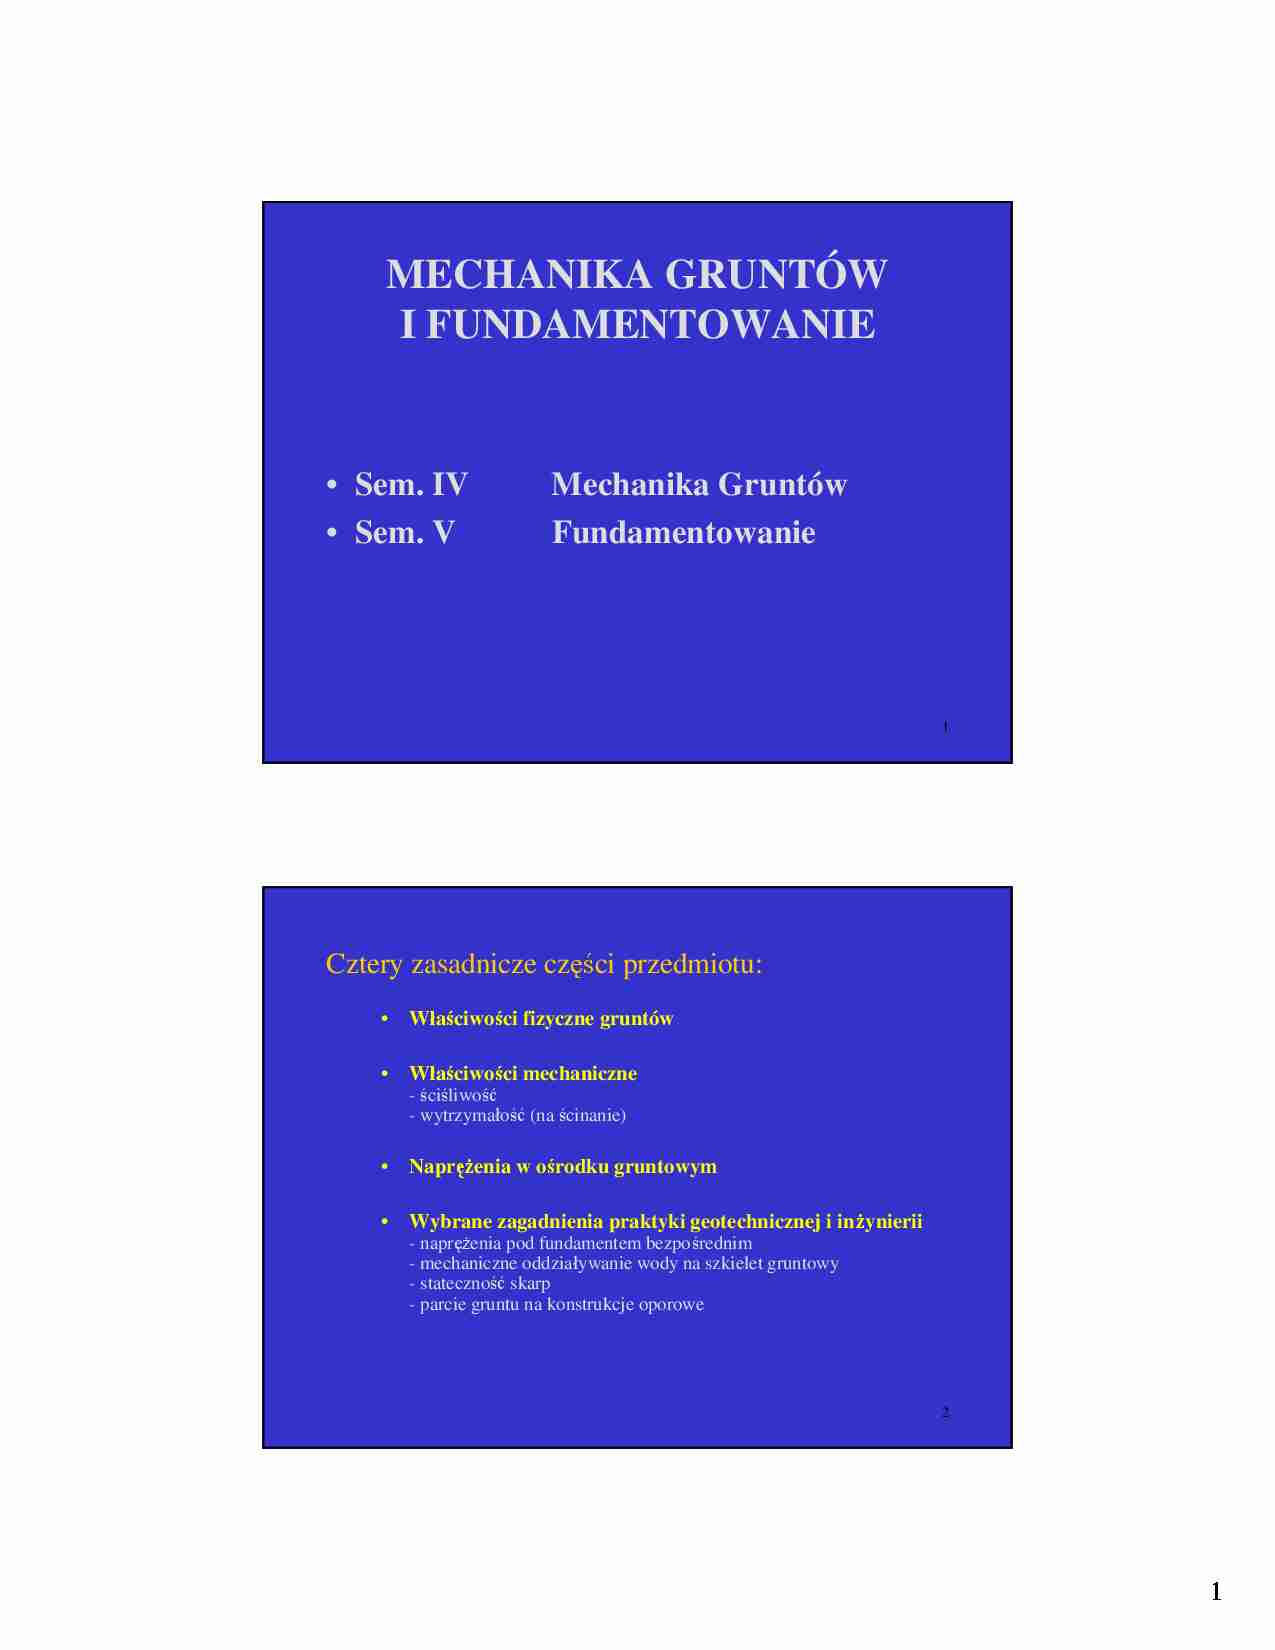 Mechanika gruntów i fundamentowanie - Wykład 1 - strona 1